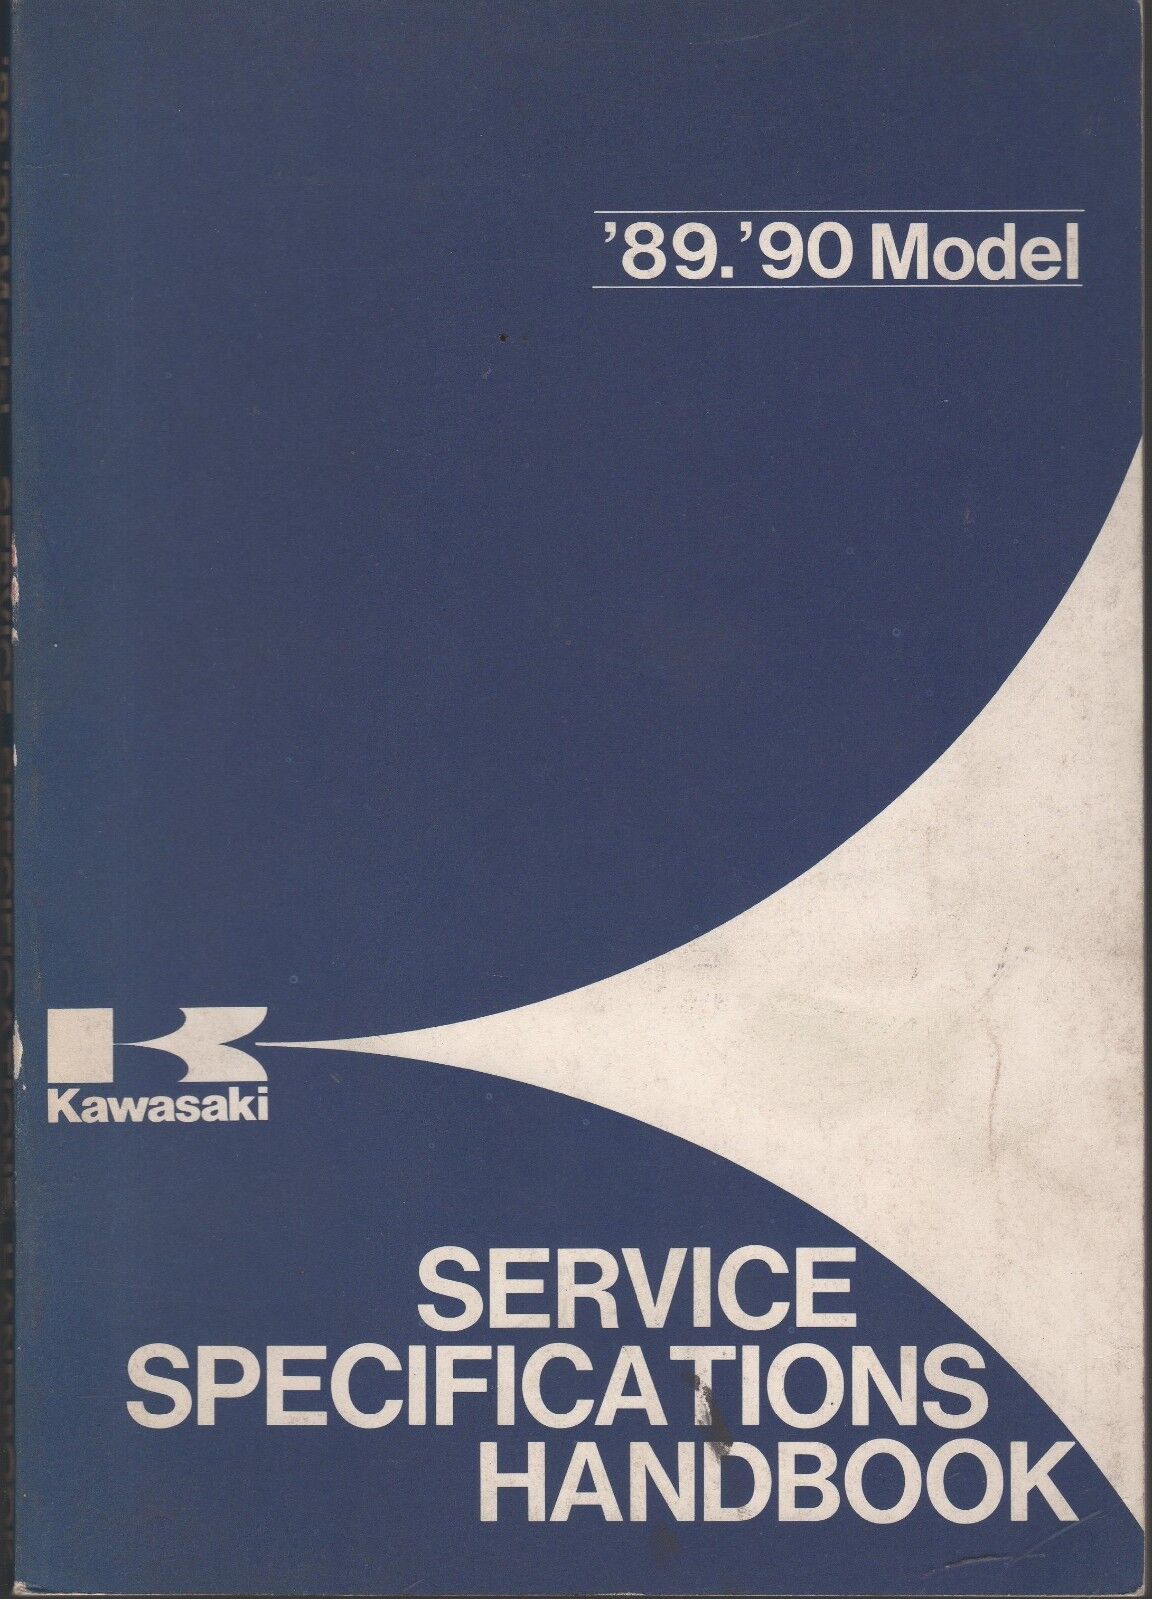 1989 & 1990 KAWASAKI MOTORCYCLE SERVICE SPECIFICATIONS HANDBOOK MANUAL (870)